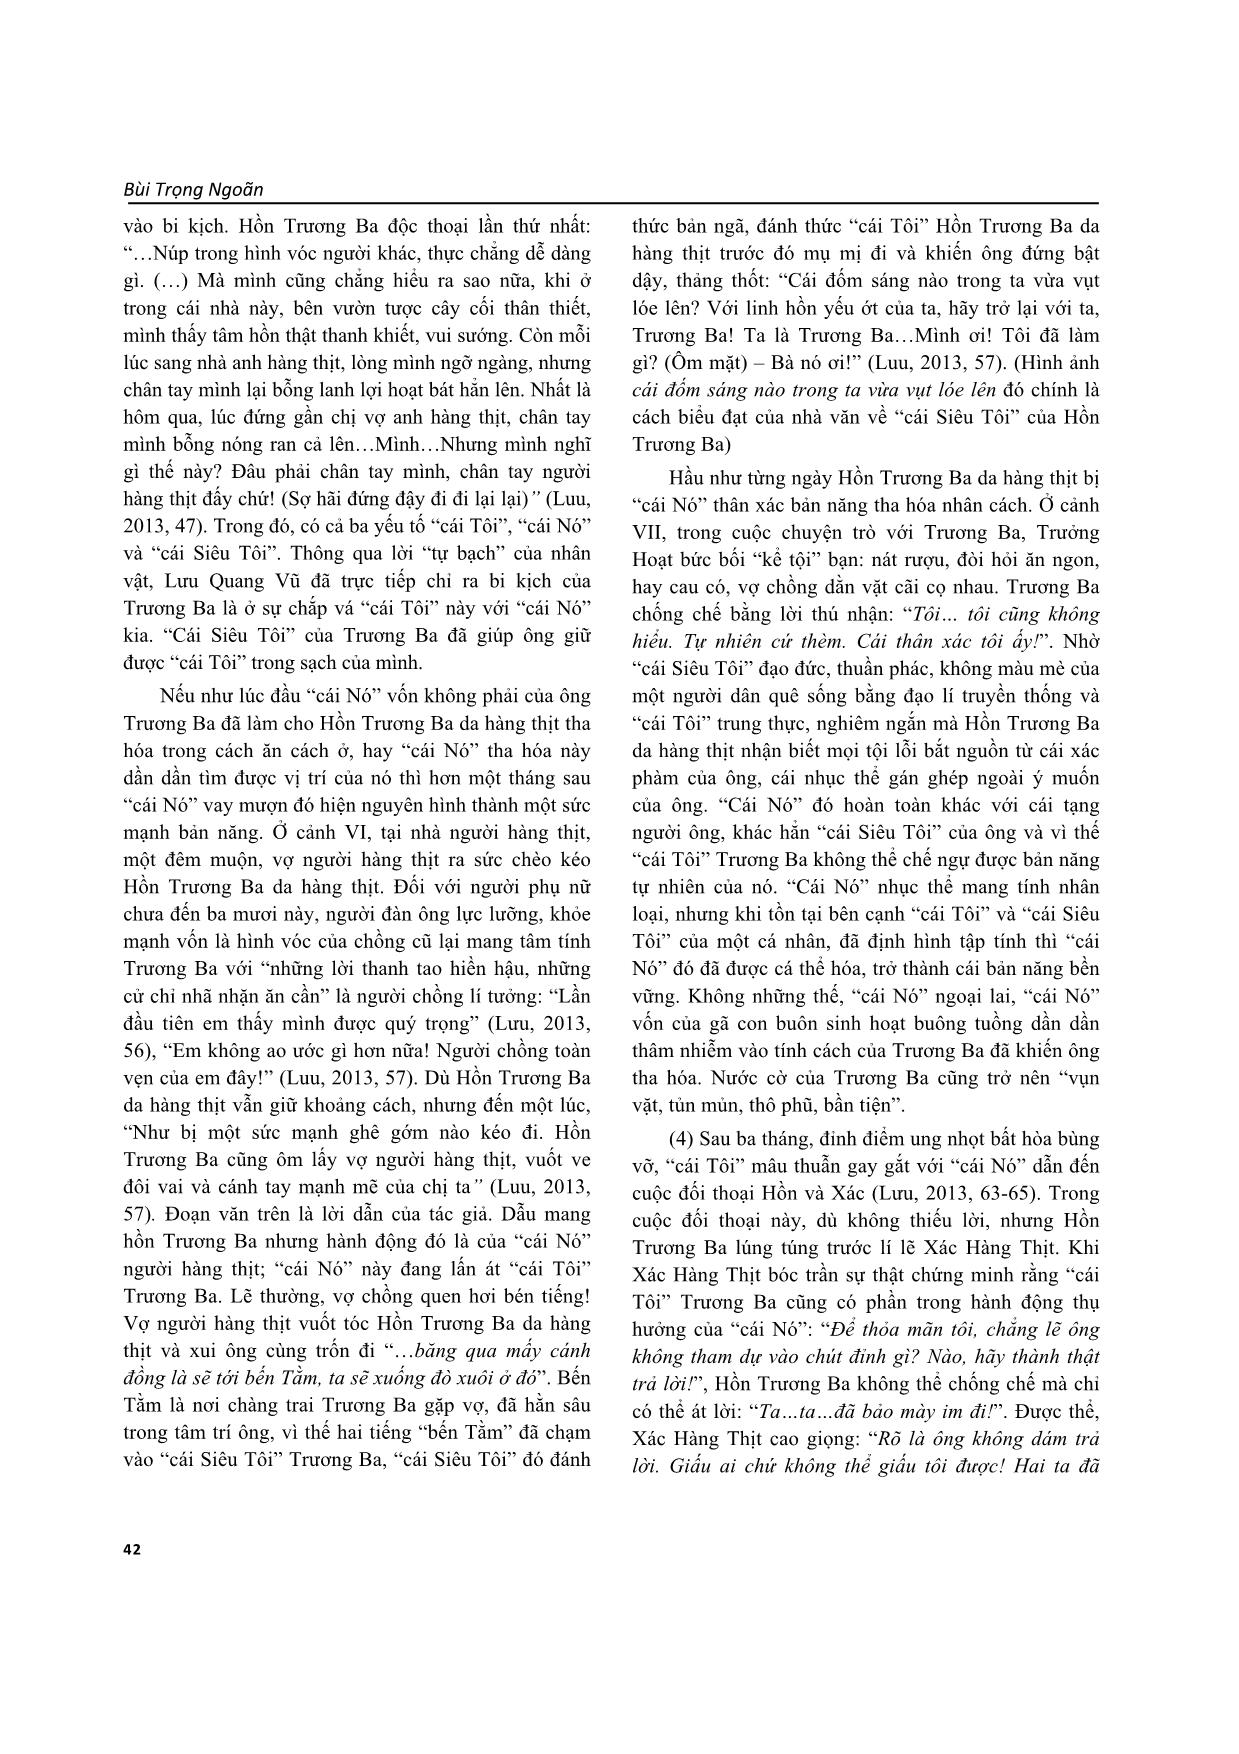 Ý tưởng triết luận và sáng tạo nghệ thuật của Lưu Quang Vũ trong kịch bản “Hồn Trương Ba da hàng thịt” trang 7